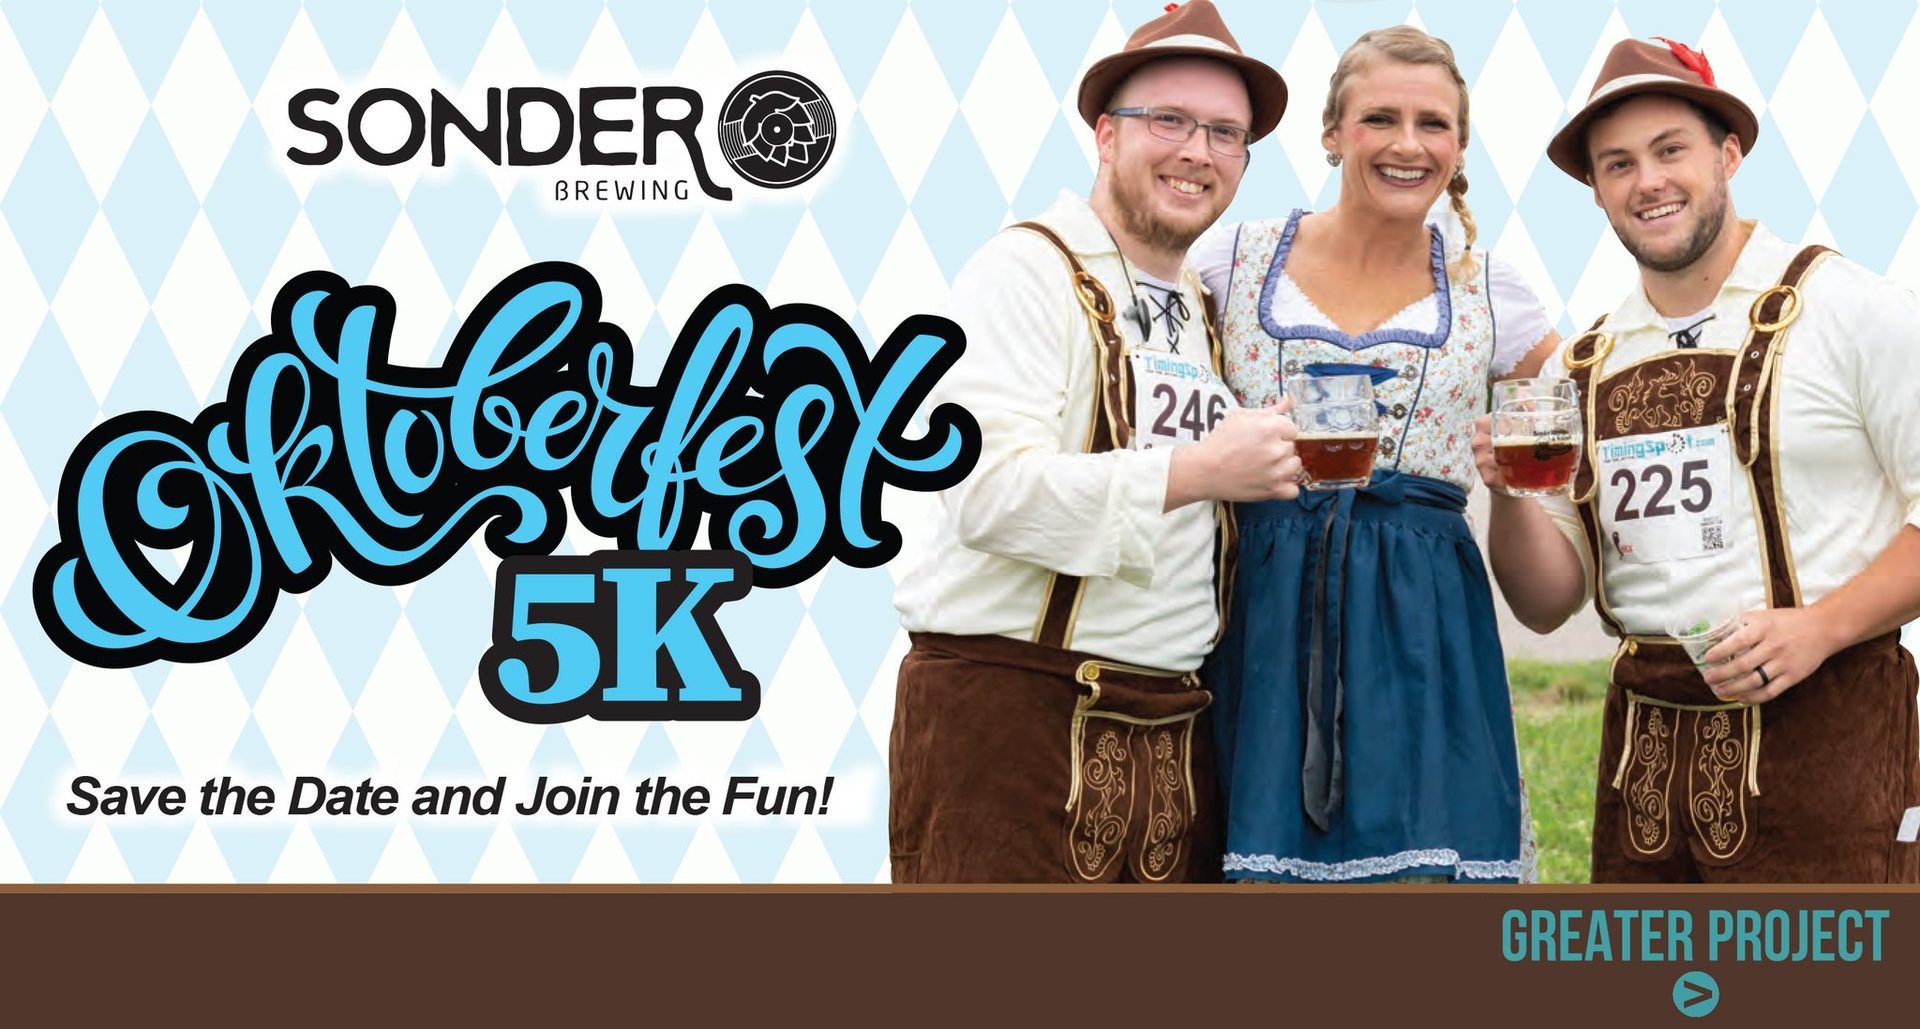 Sonder & Friends Oktoberfest Live Music & 5 K, Mason, Ohio, United States